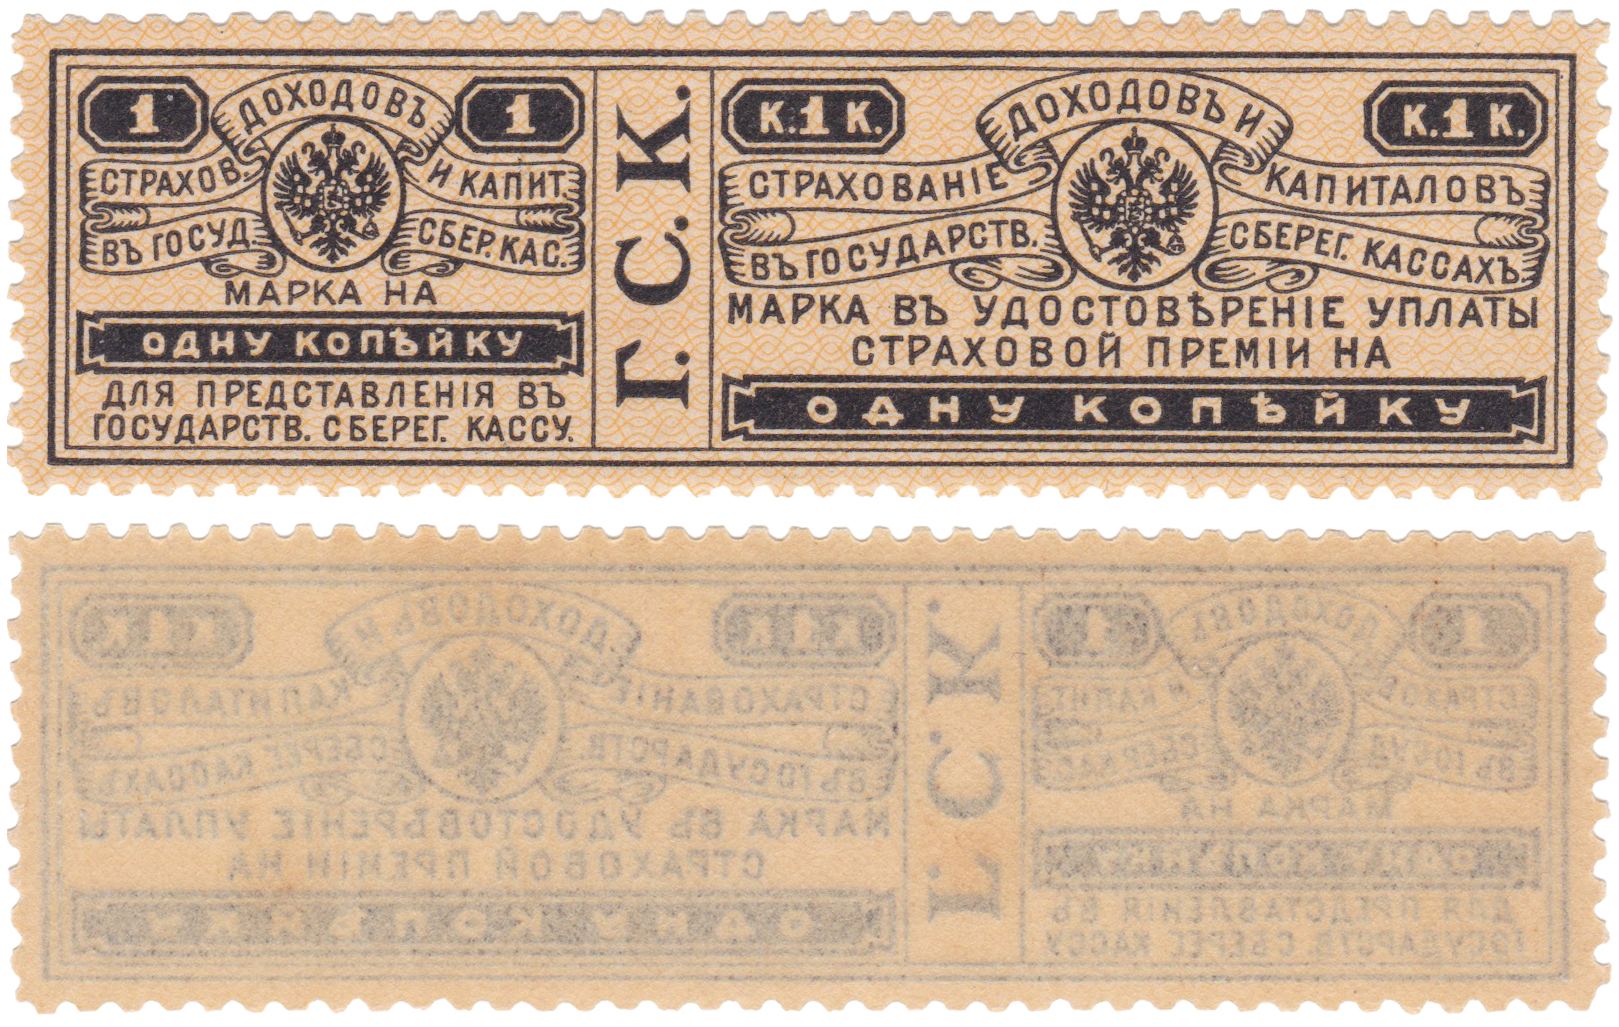 Марка на 1 Копейку в удовлетворении уплаты страховой премии для представления в государственную сберегательную кассу 1903 год. Министерством финансов